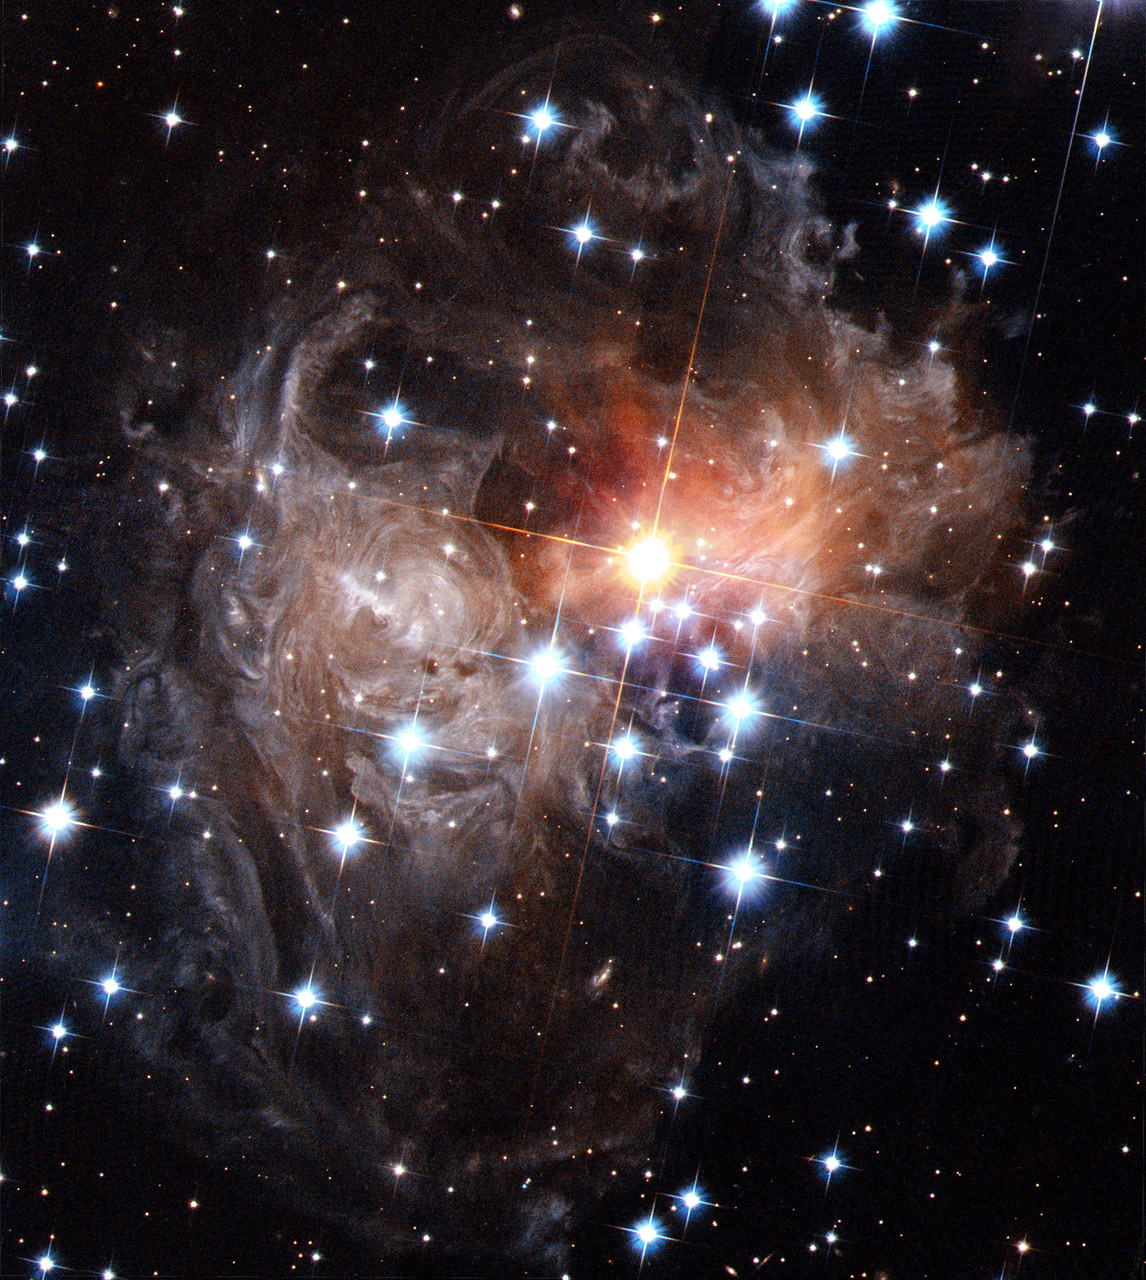 september-9-2019-v838-monocerotis-light-echo.jpg